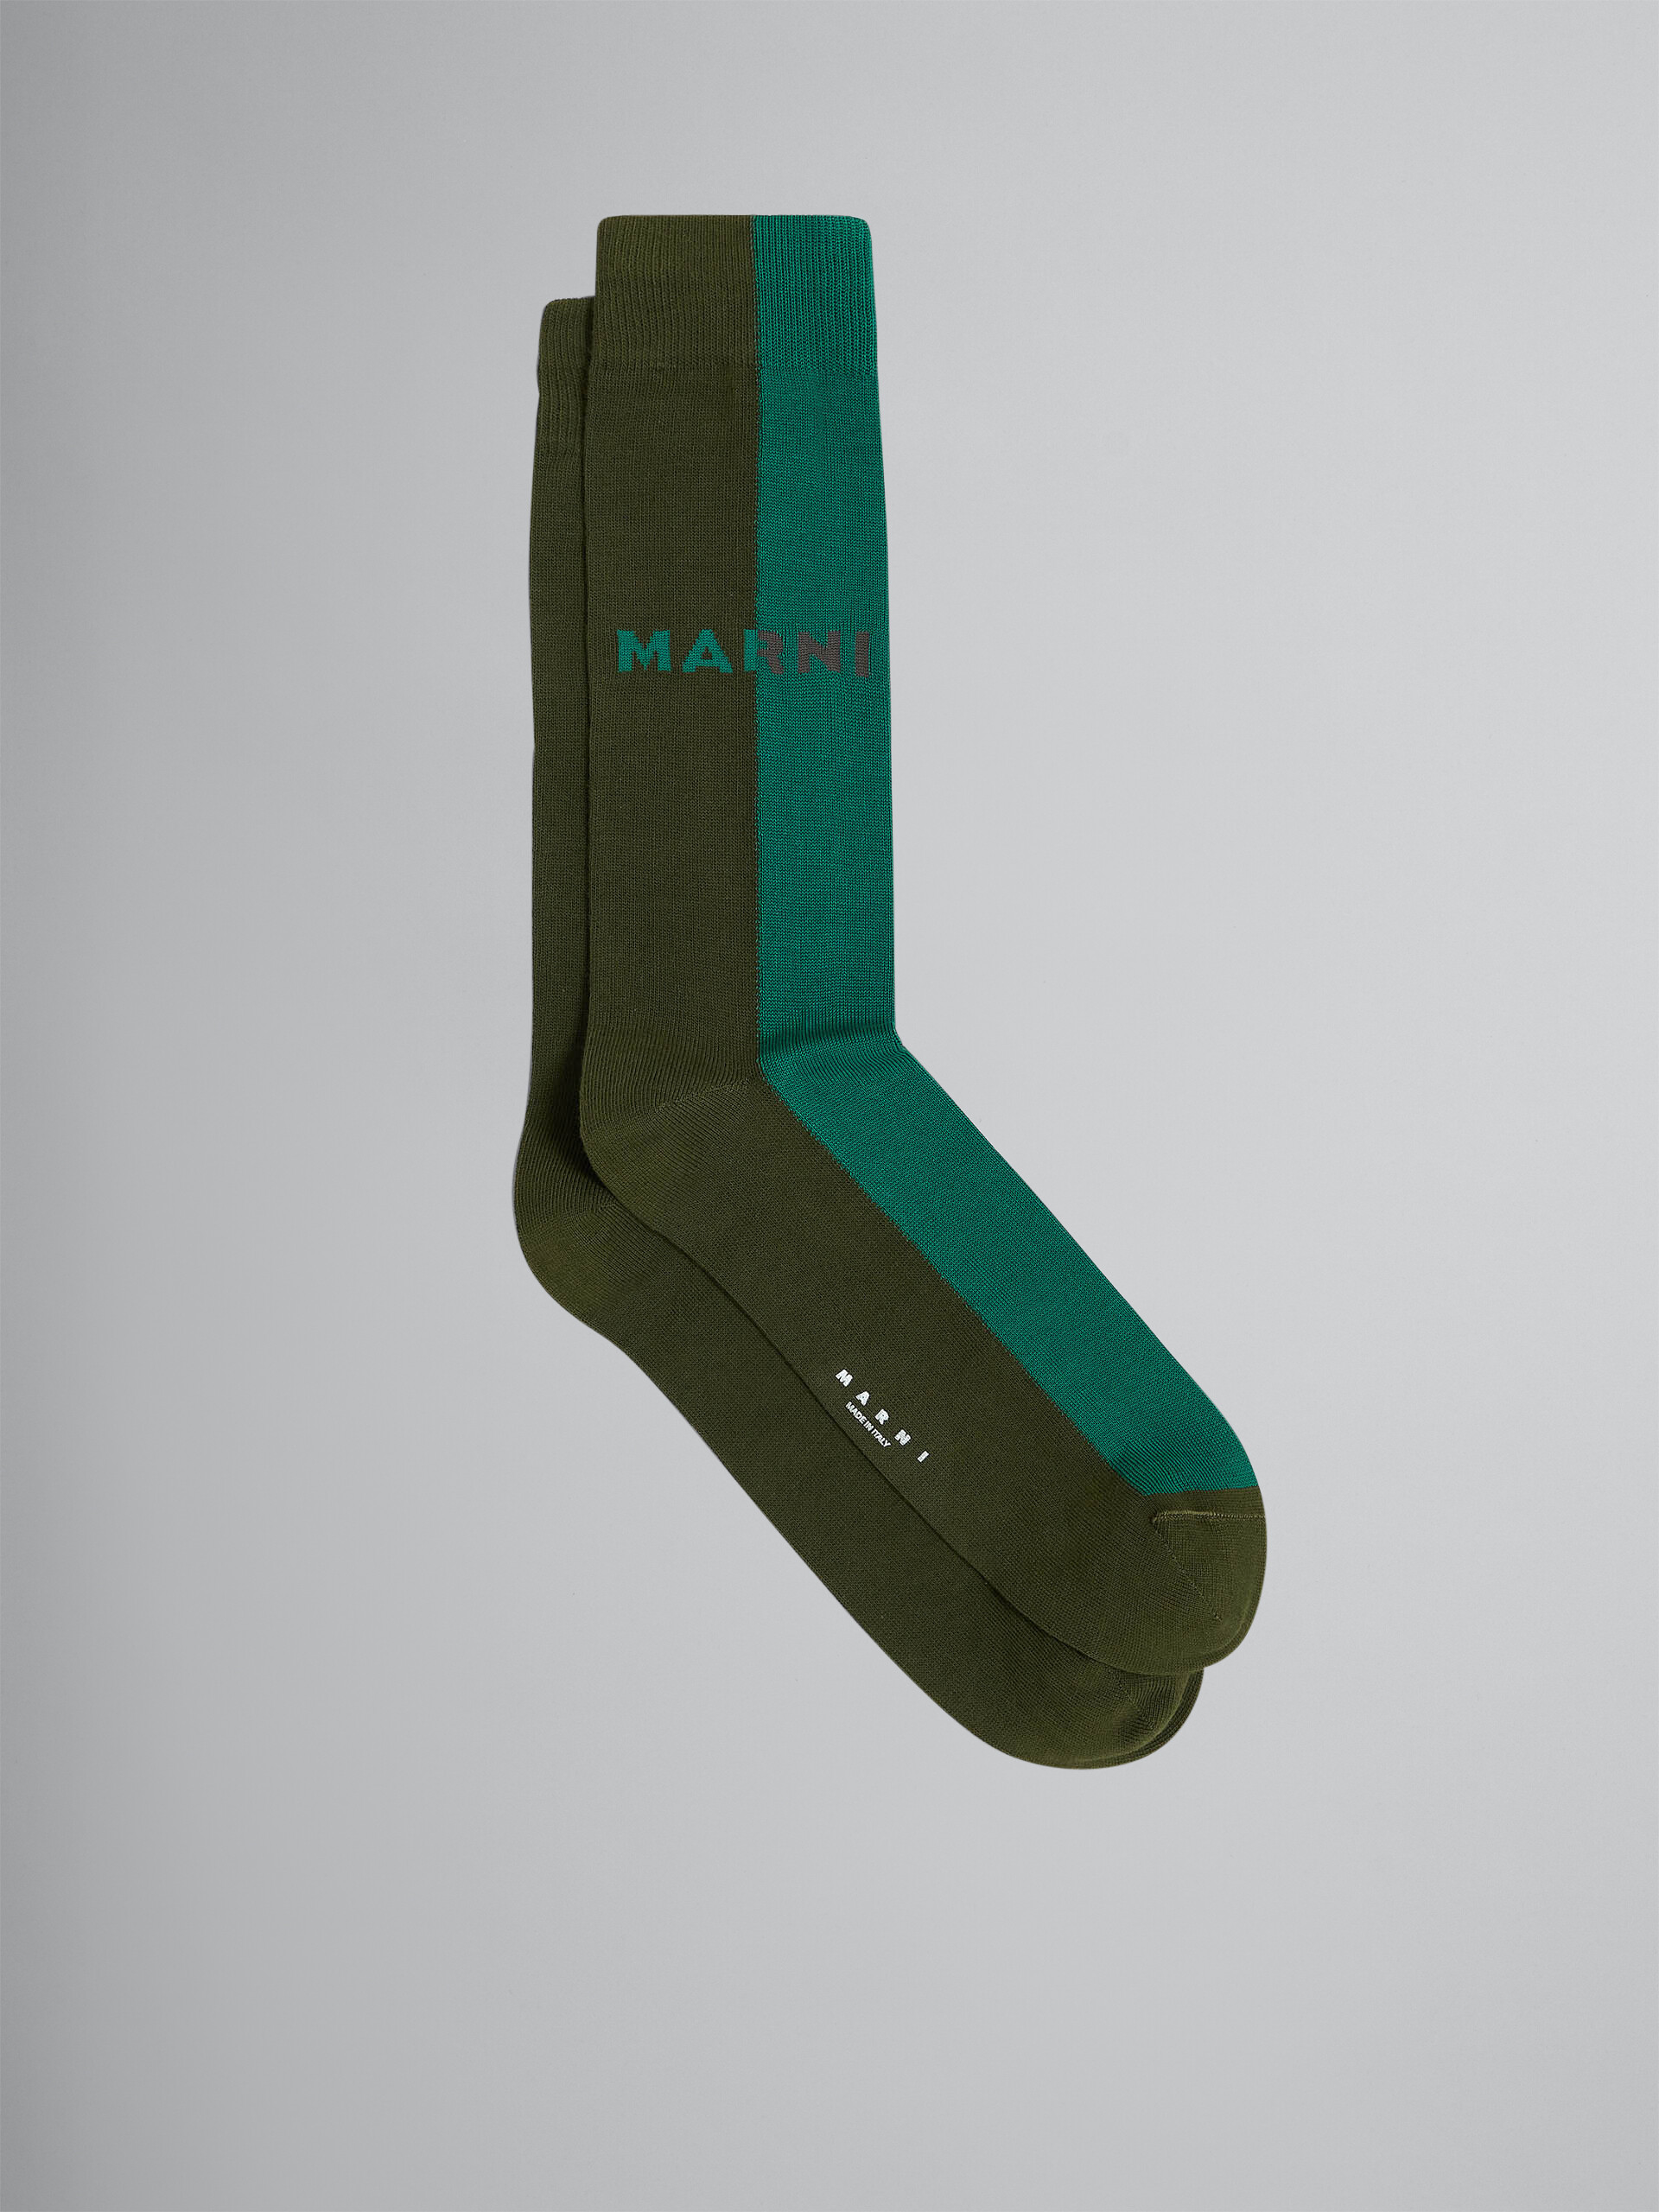 Chaussettes bicolores vertes en coton et nylon - Chaussettes - Image 1